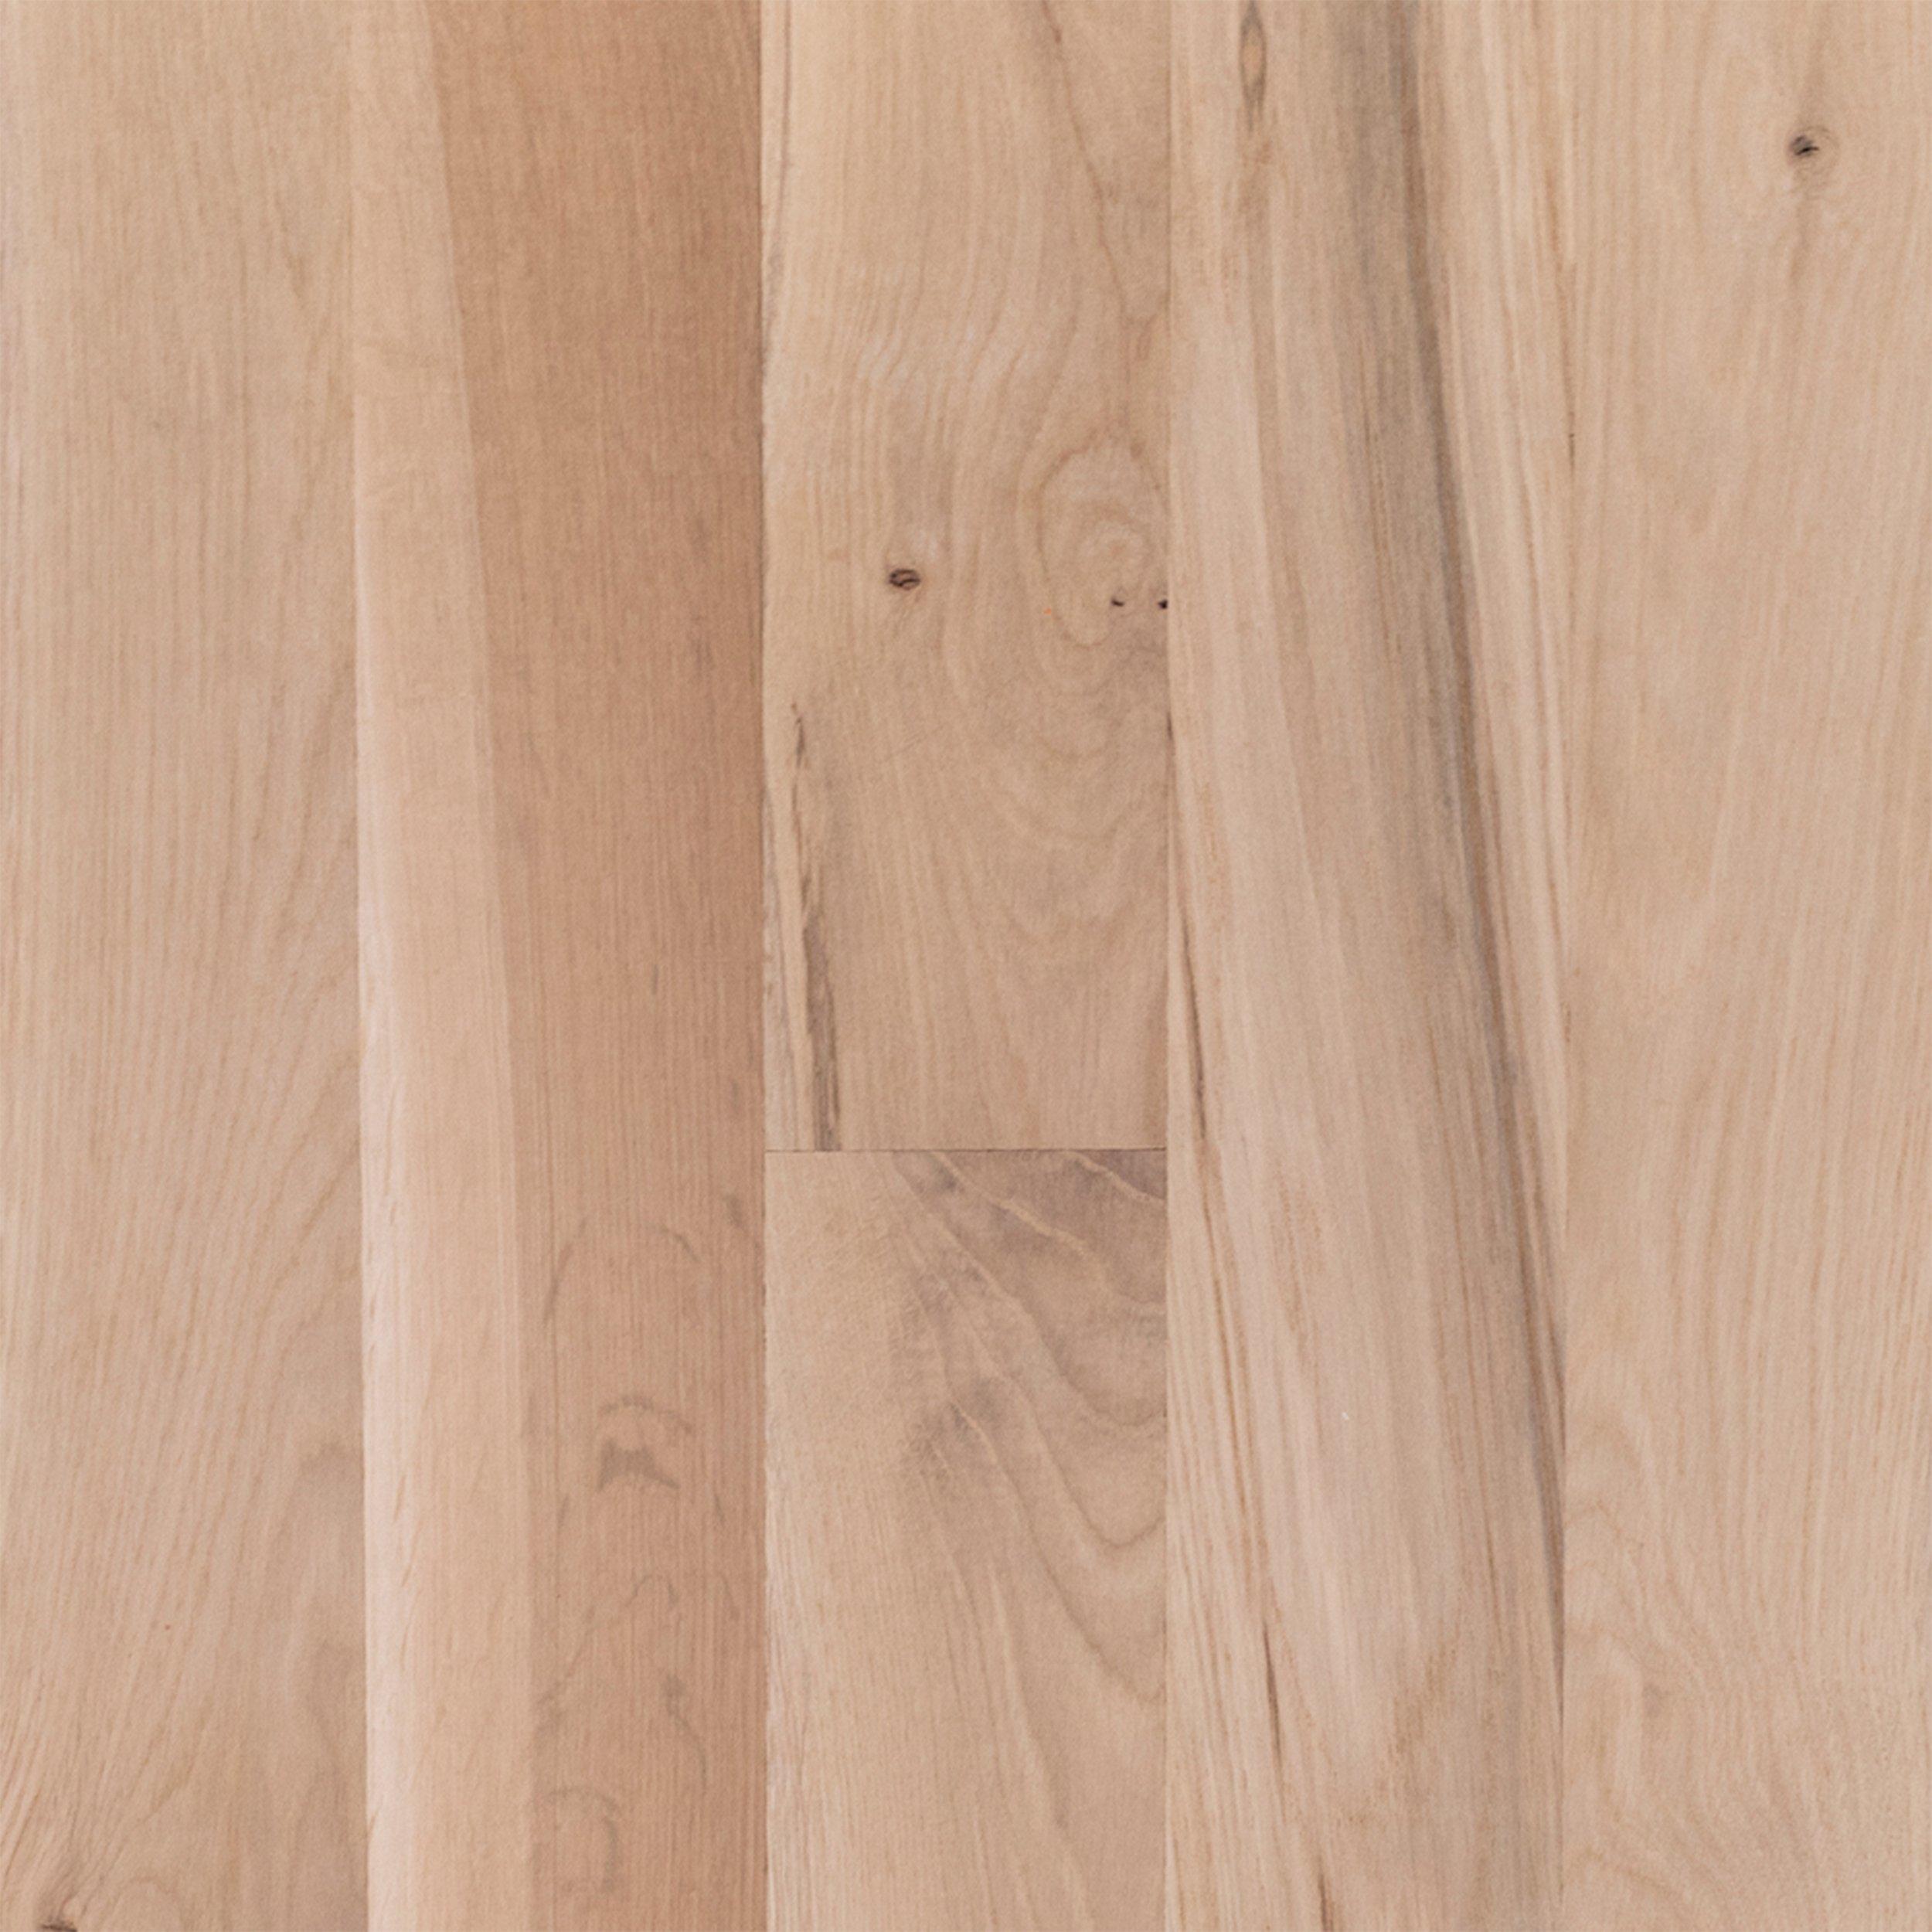 Unfinished White Oak Engineered Hardwood Character Grade